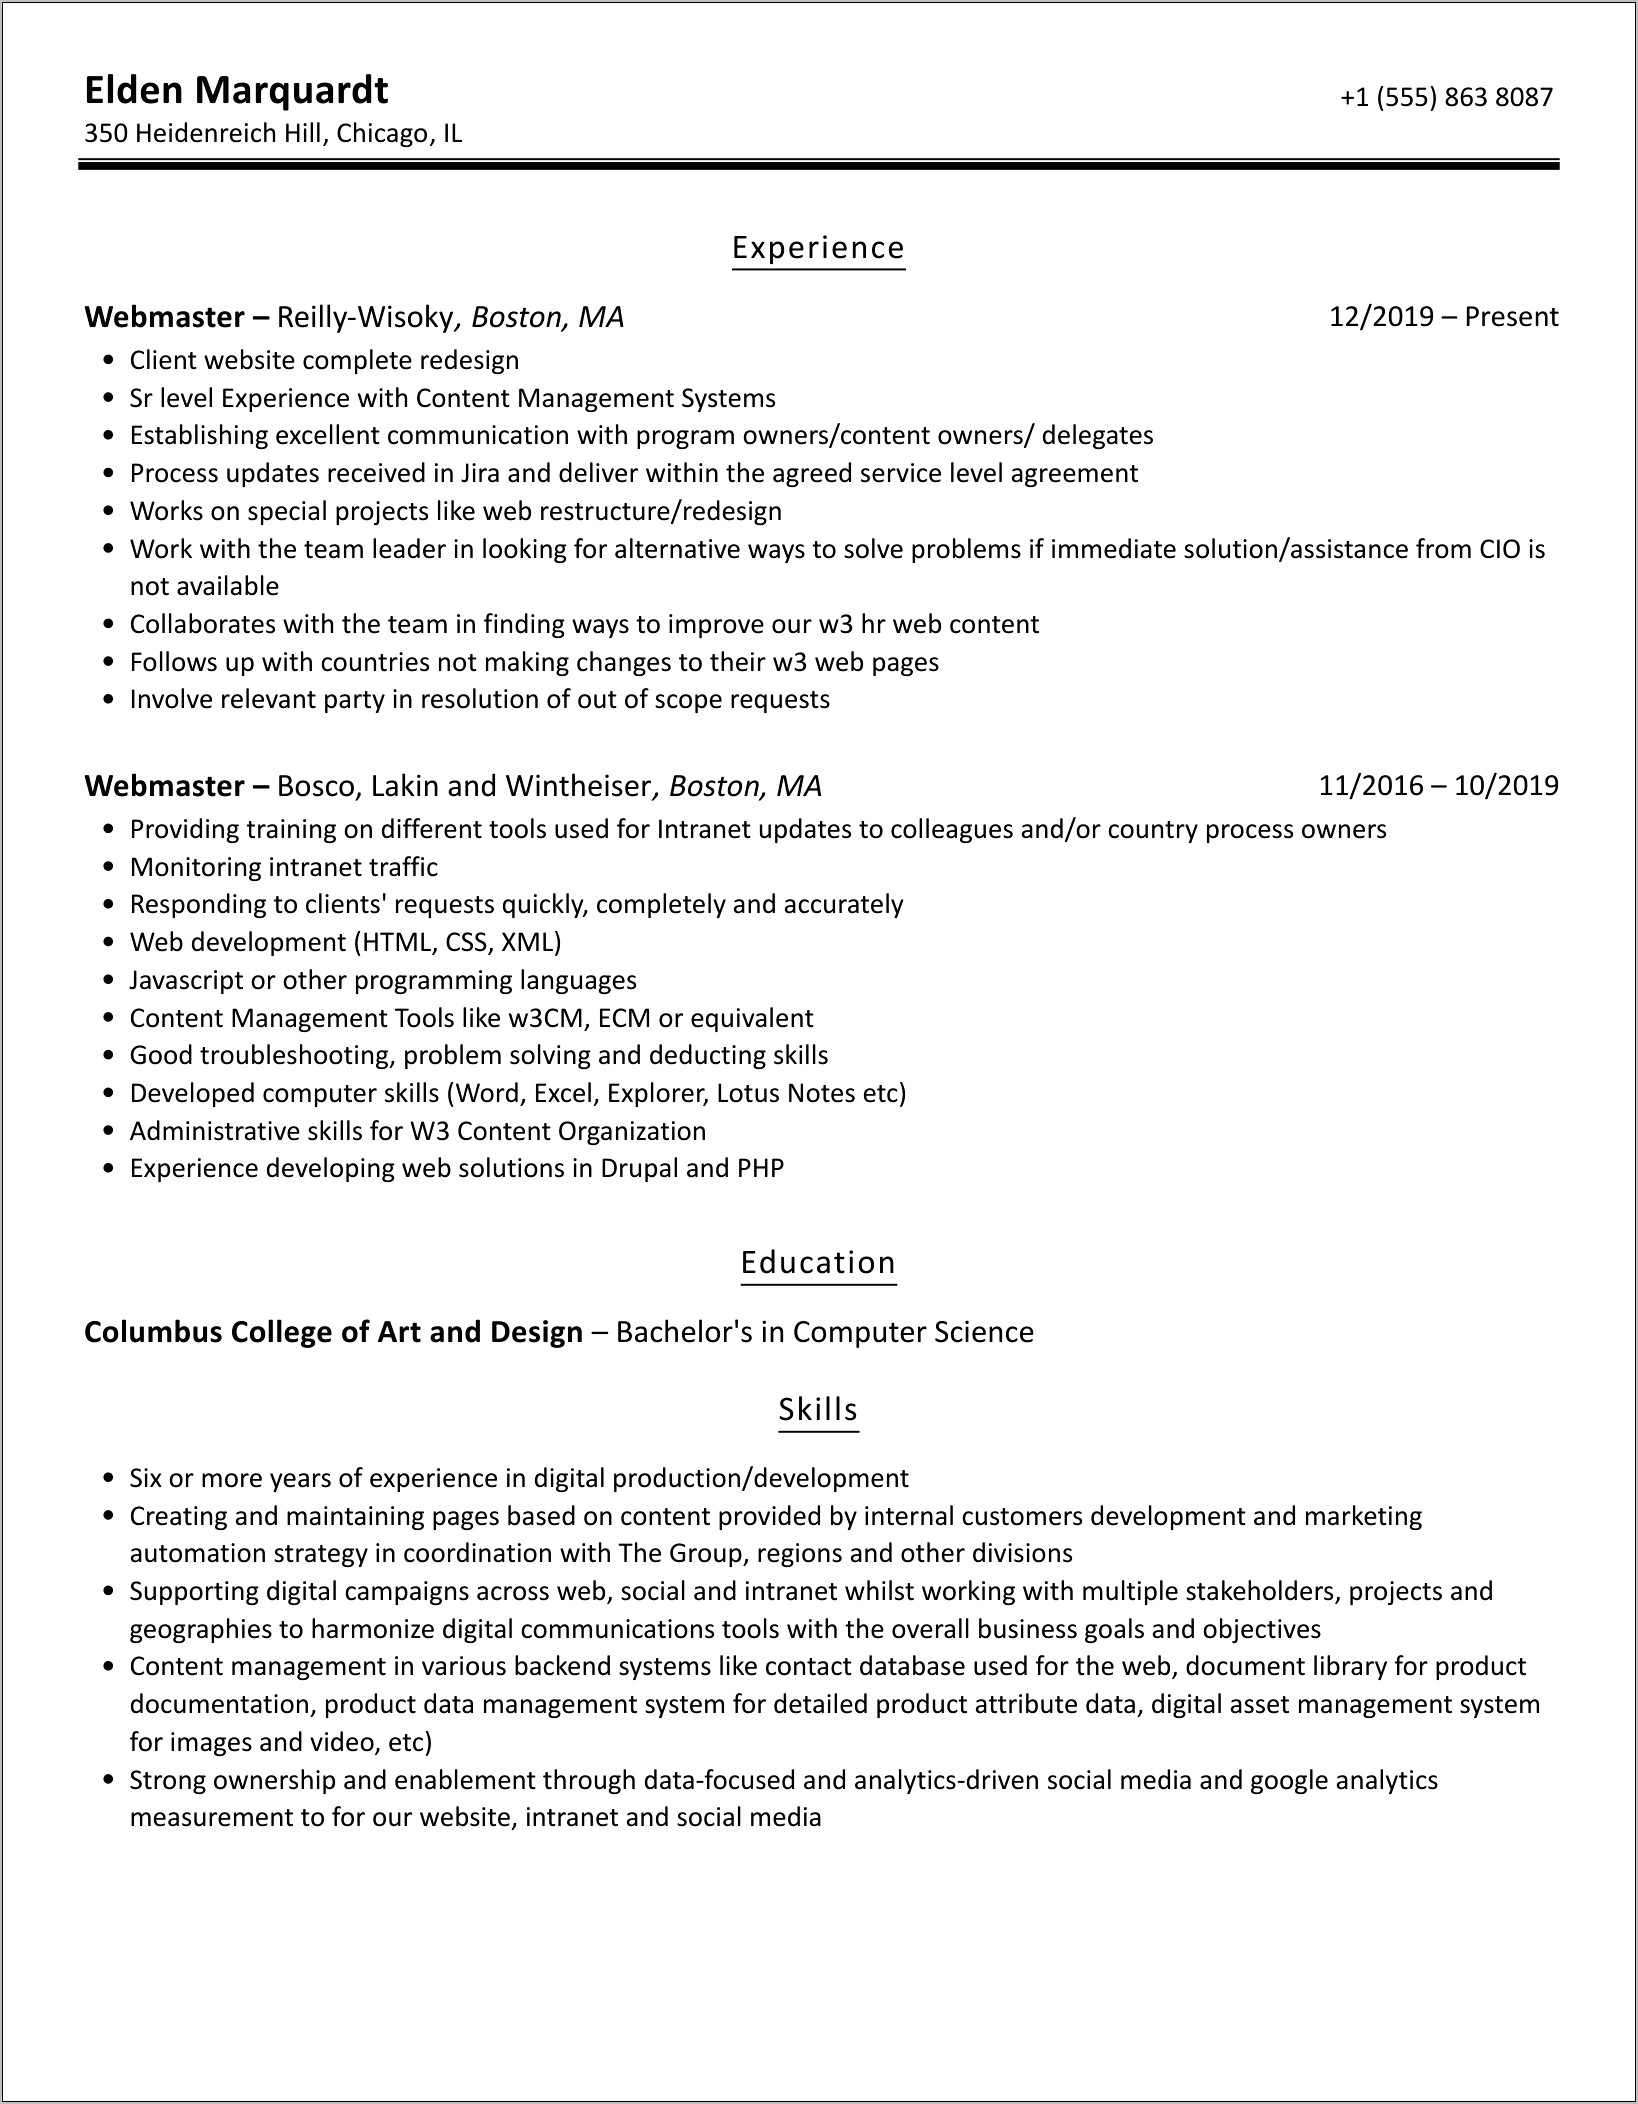 Webmaster Job Details For Resume